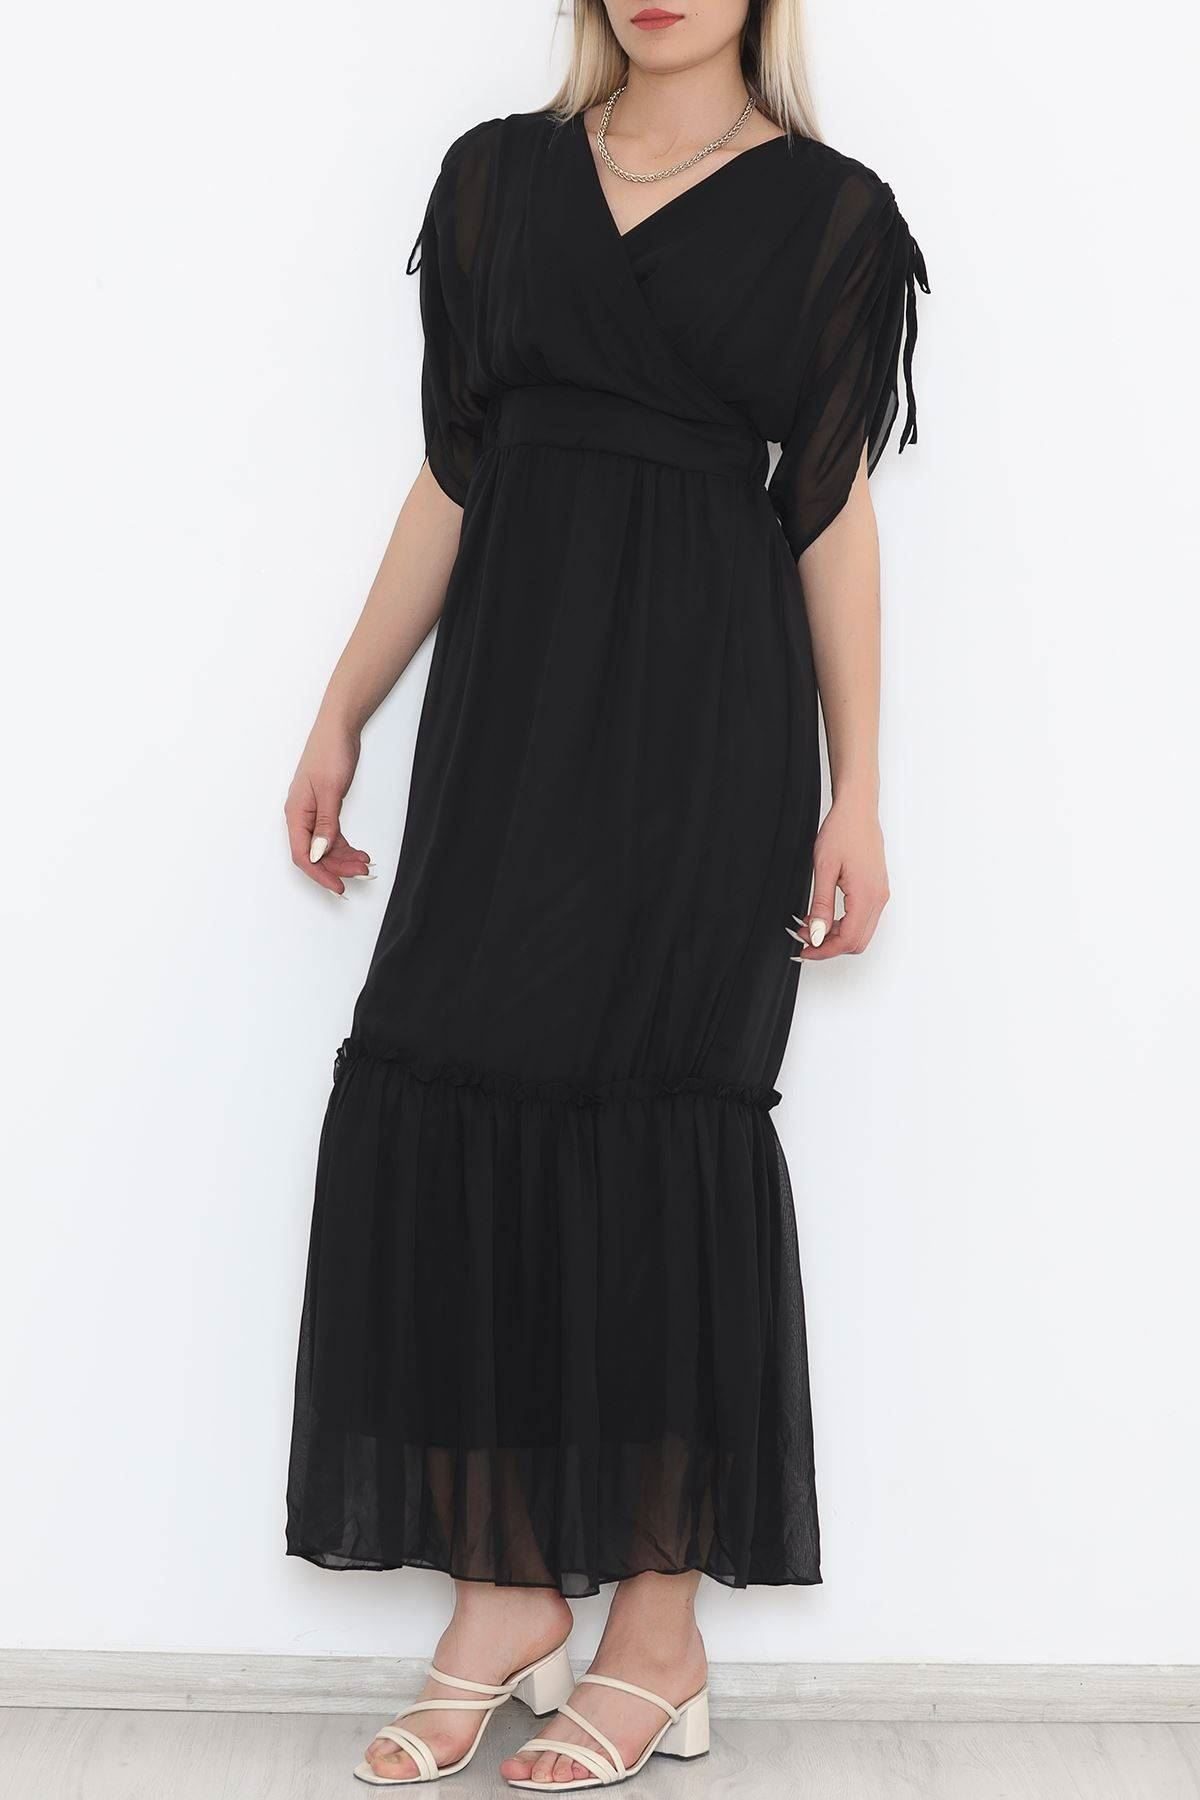 Lisinya275 Kolları Büzgülü Şifon Elbise Siyah